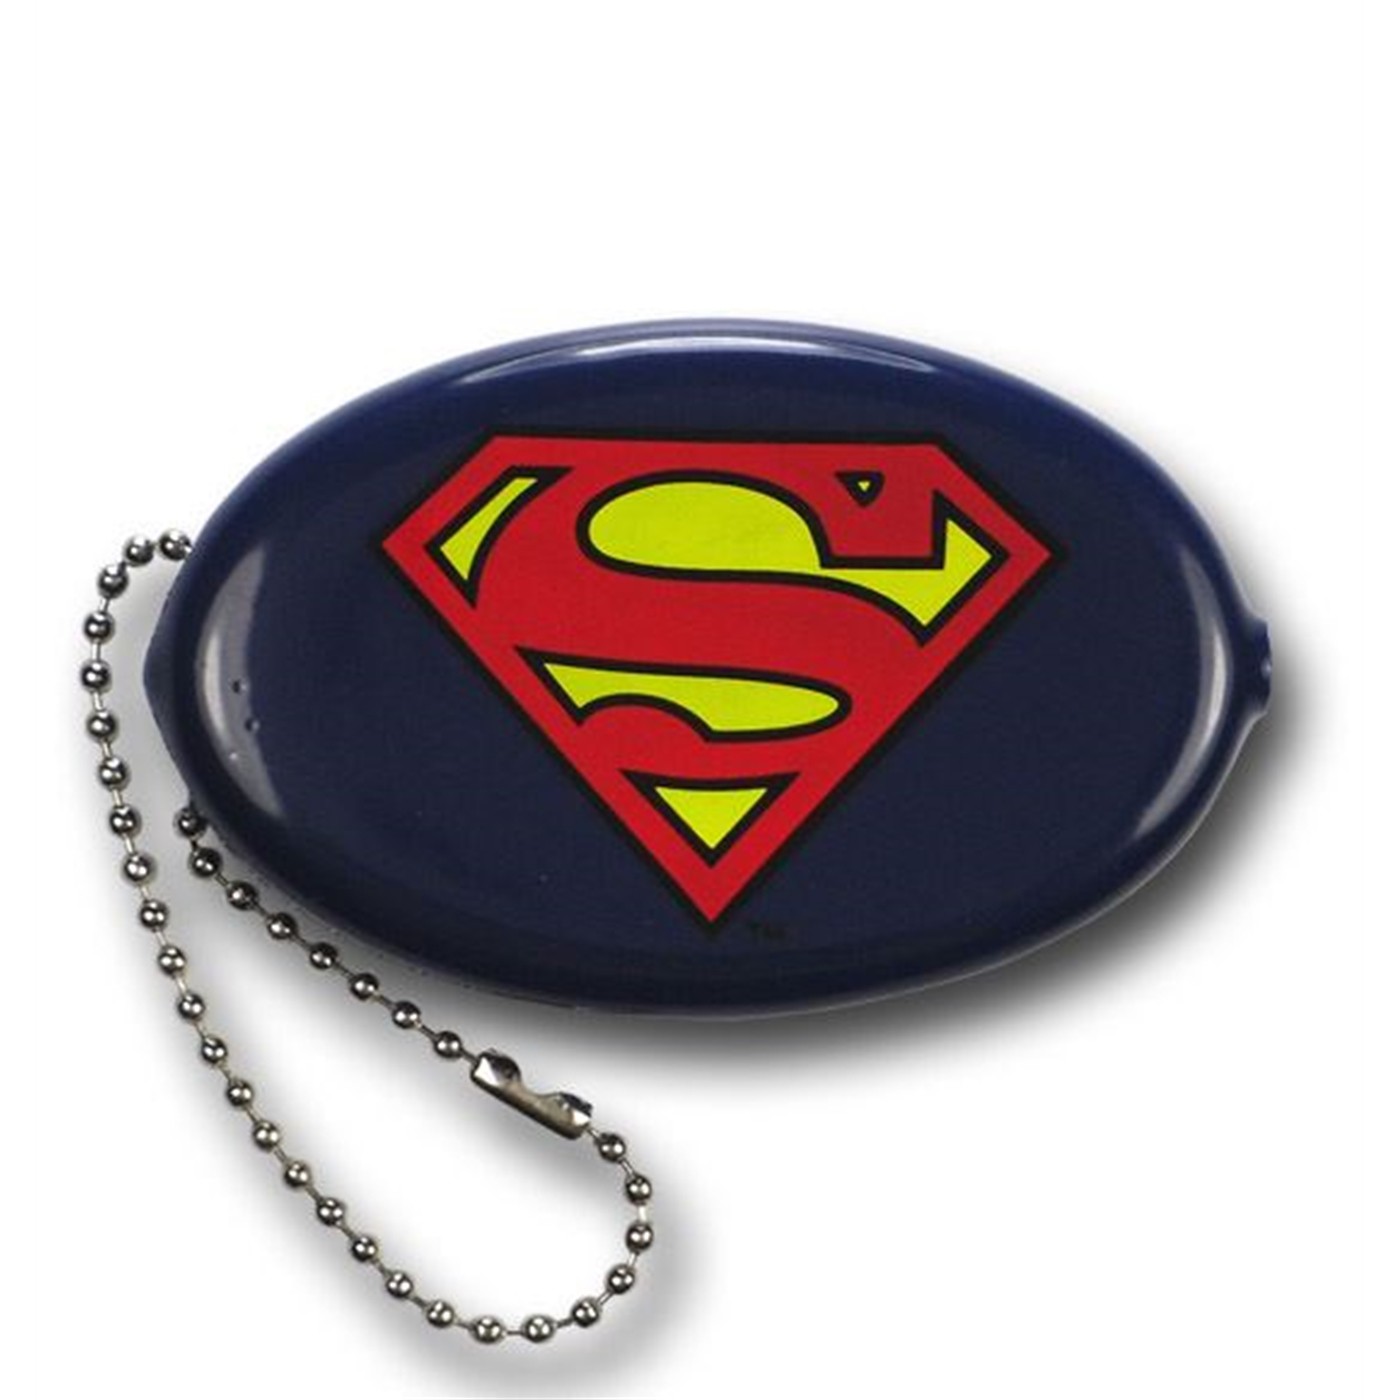 Superman Coin Purse